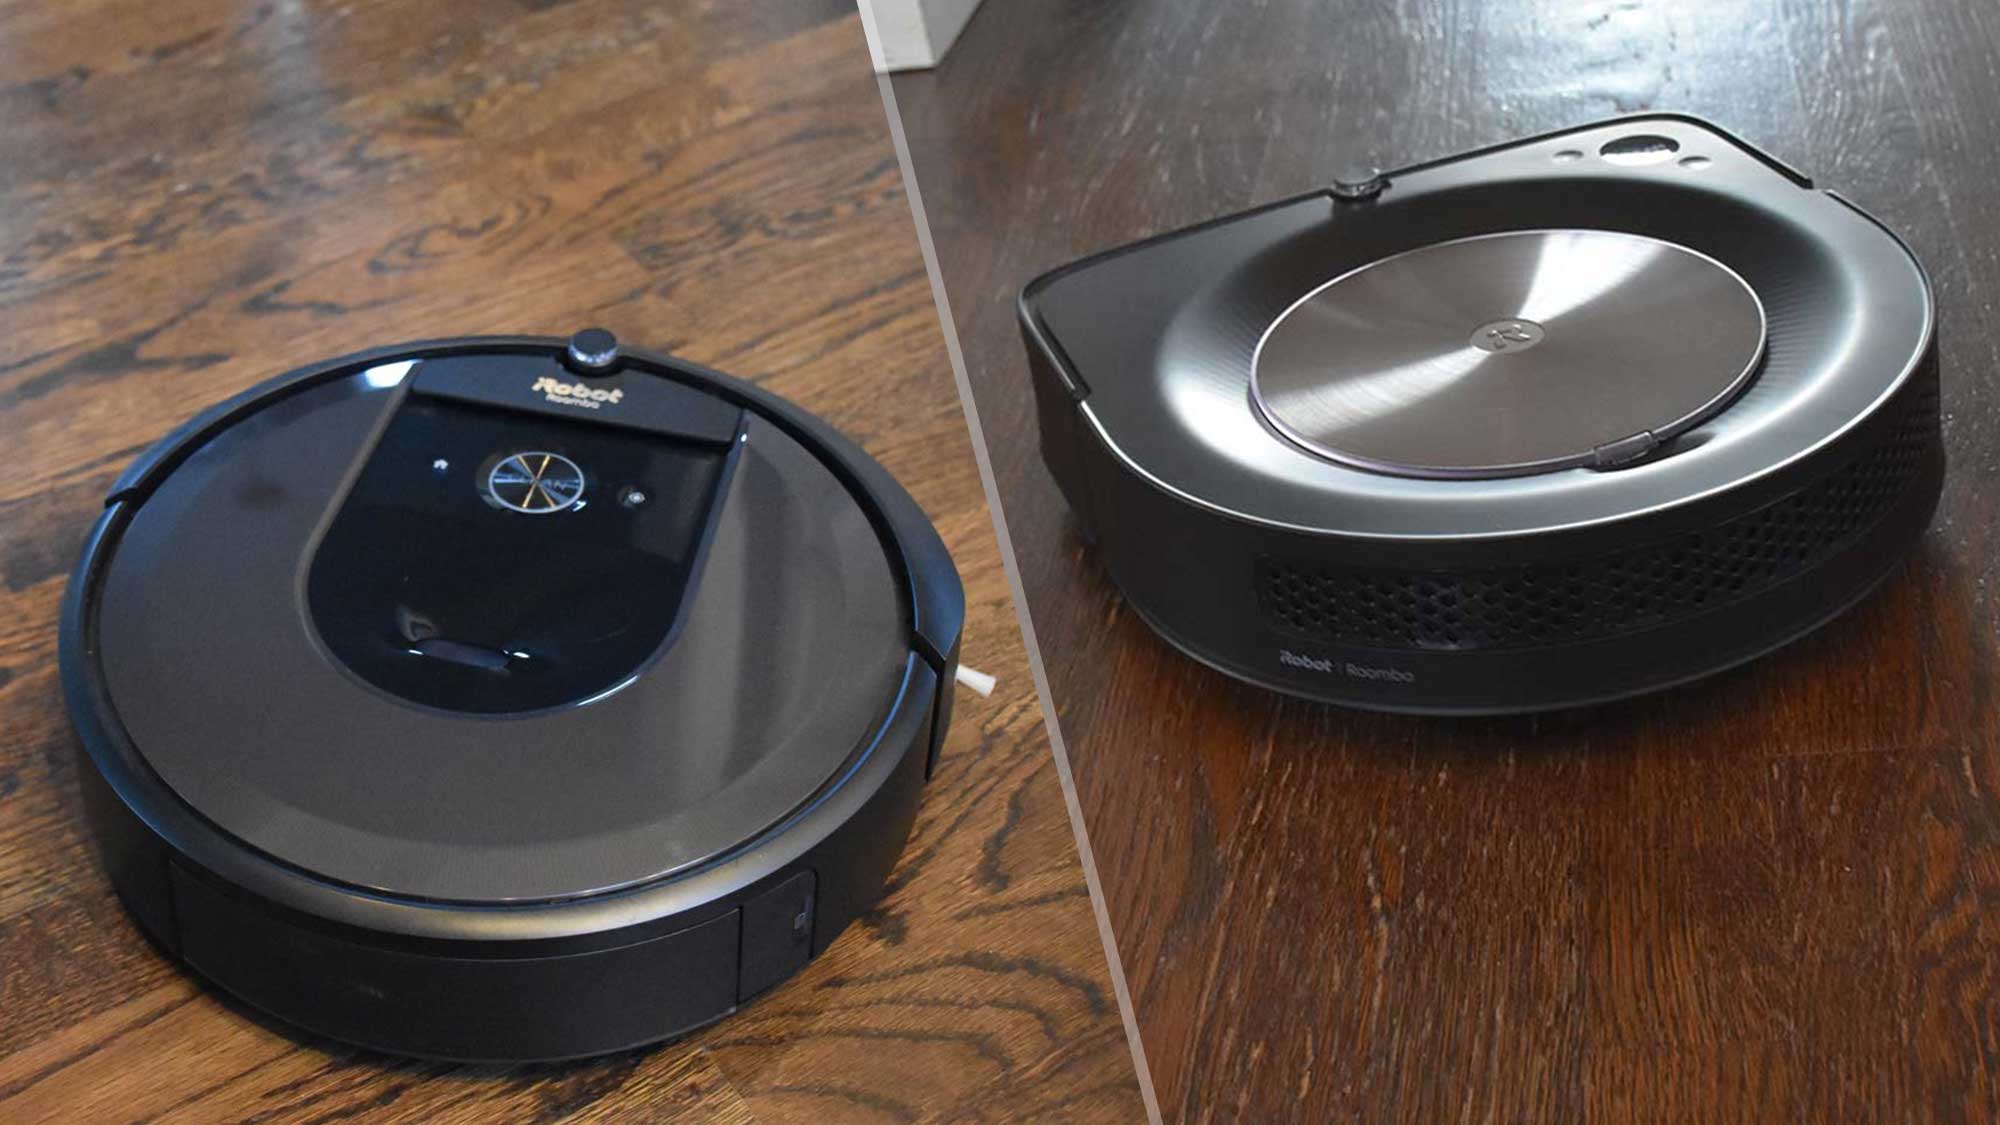 iRobot Roomba s9+ vs. iRobot Roomba i7+: Which should you buy